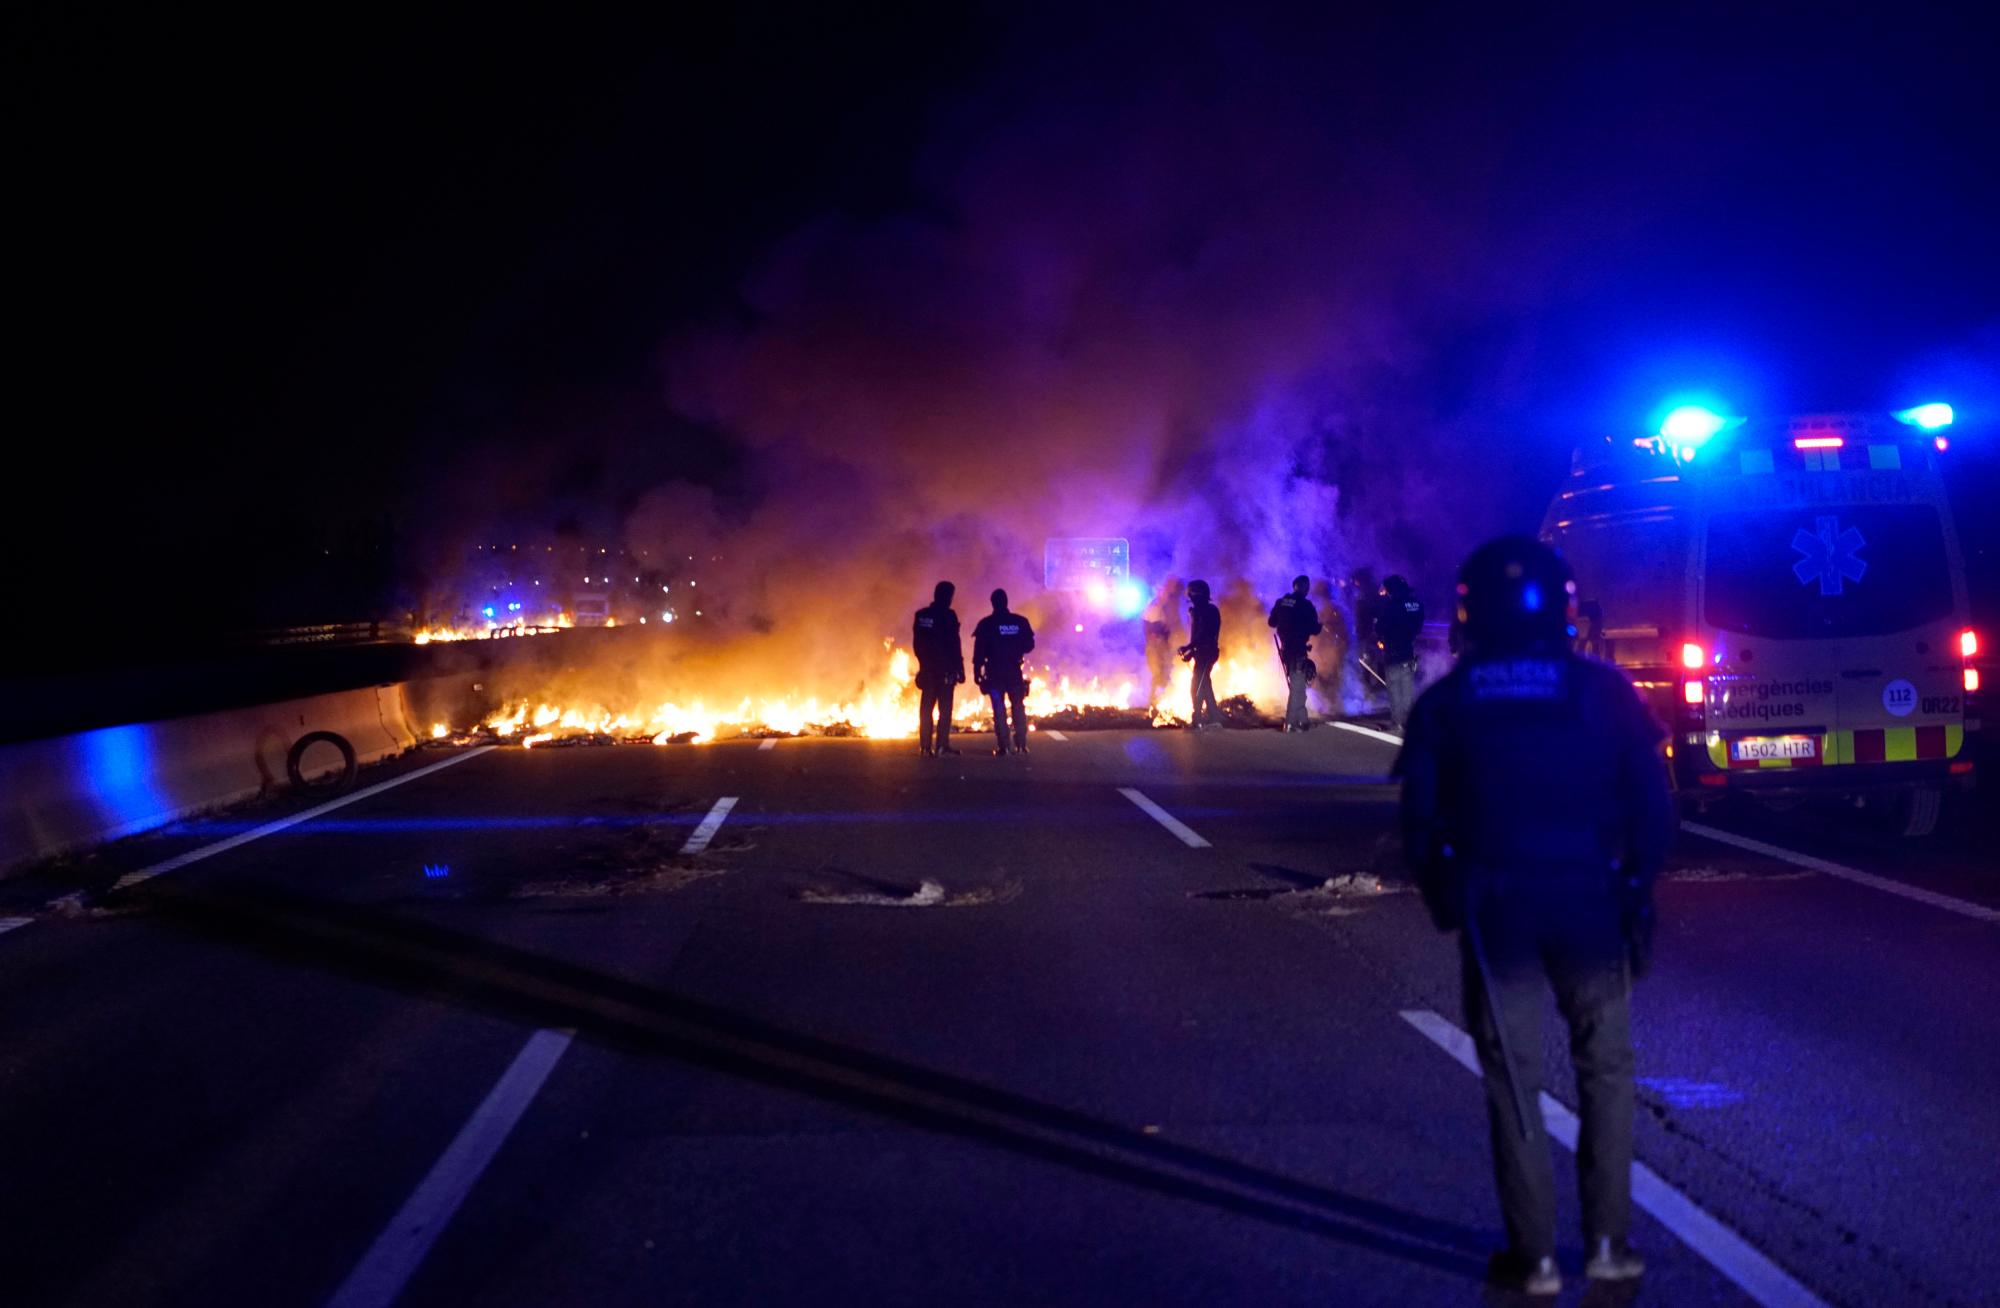 Los oficiales de policía intentan eliminar los neumáticos quemados, establecidos por los manifestantes para bloquear una carretera en protesta por el encarcelamiento de líderes políticos independentistas durante una huelga general en Cataluña, España. 